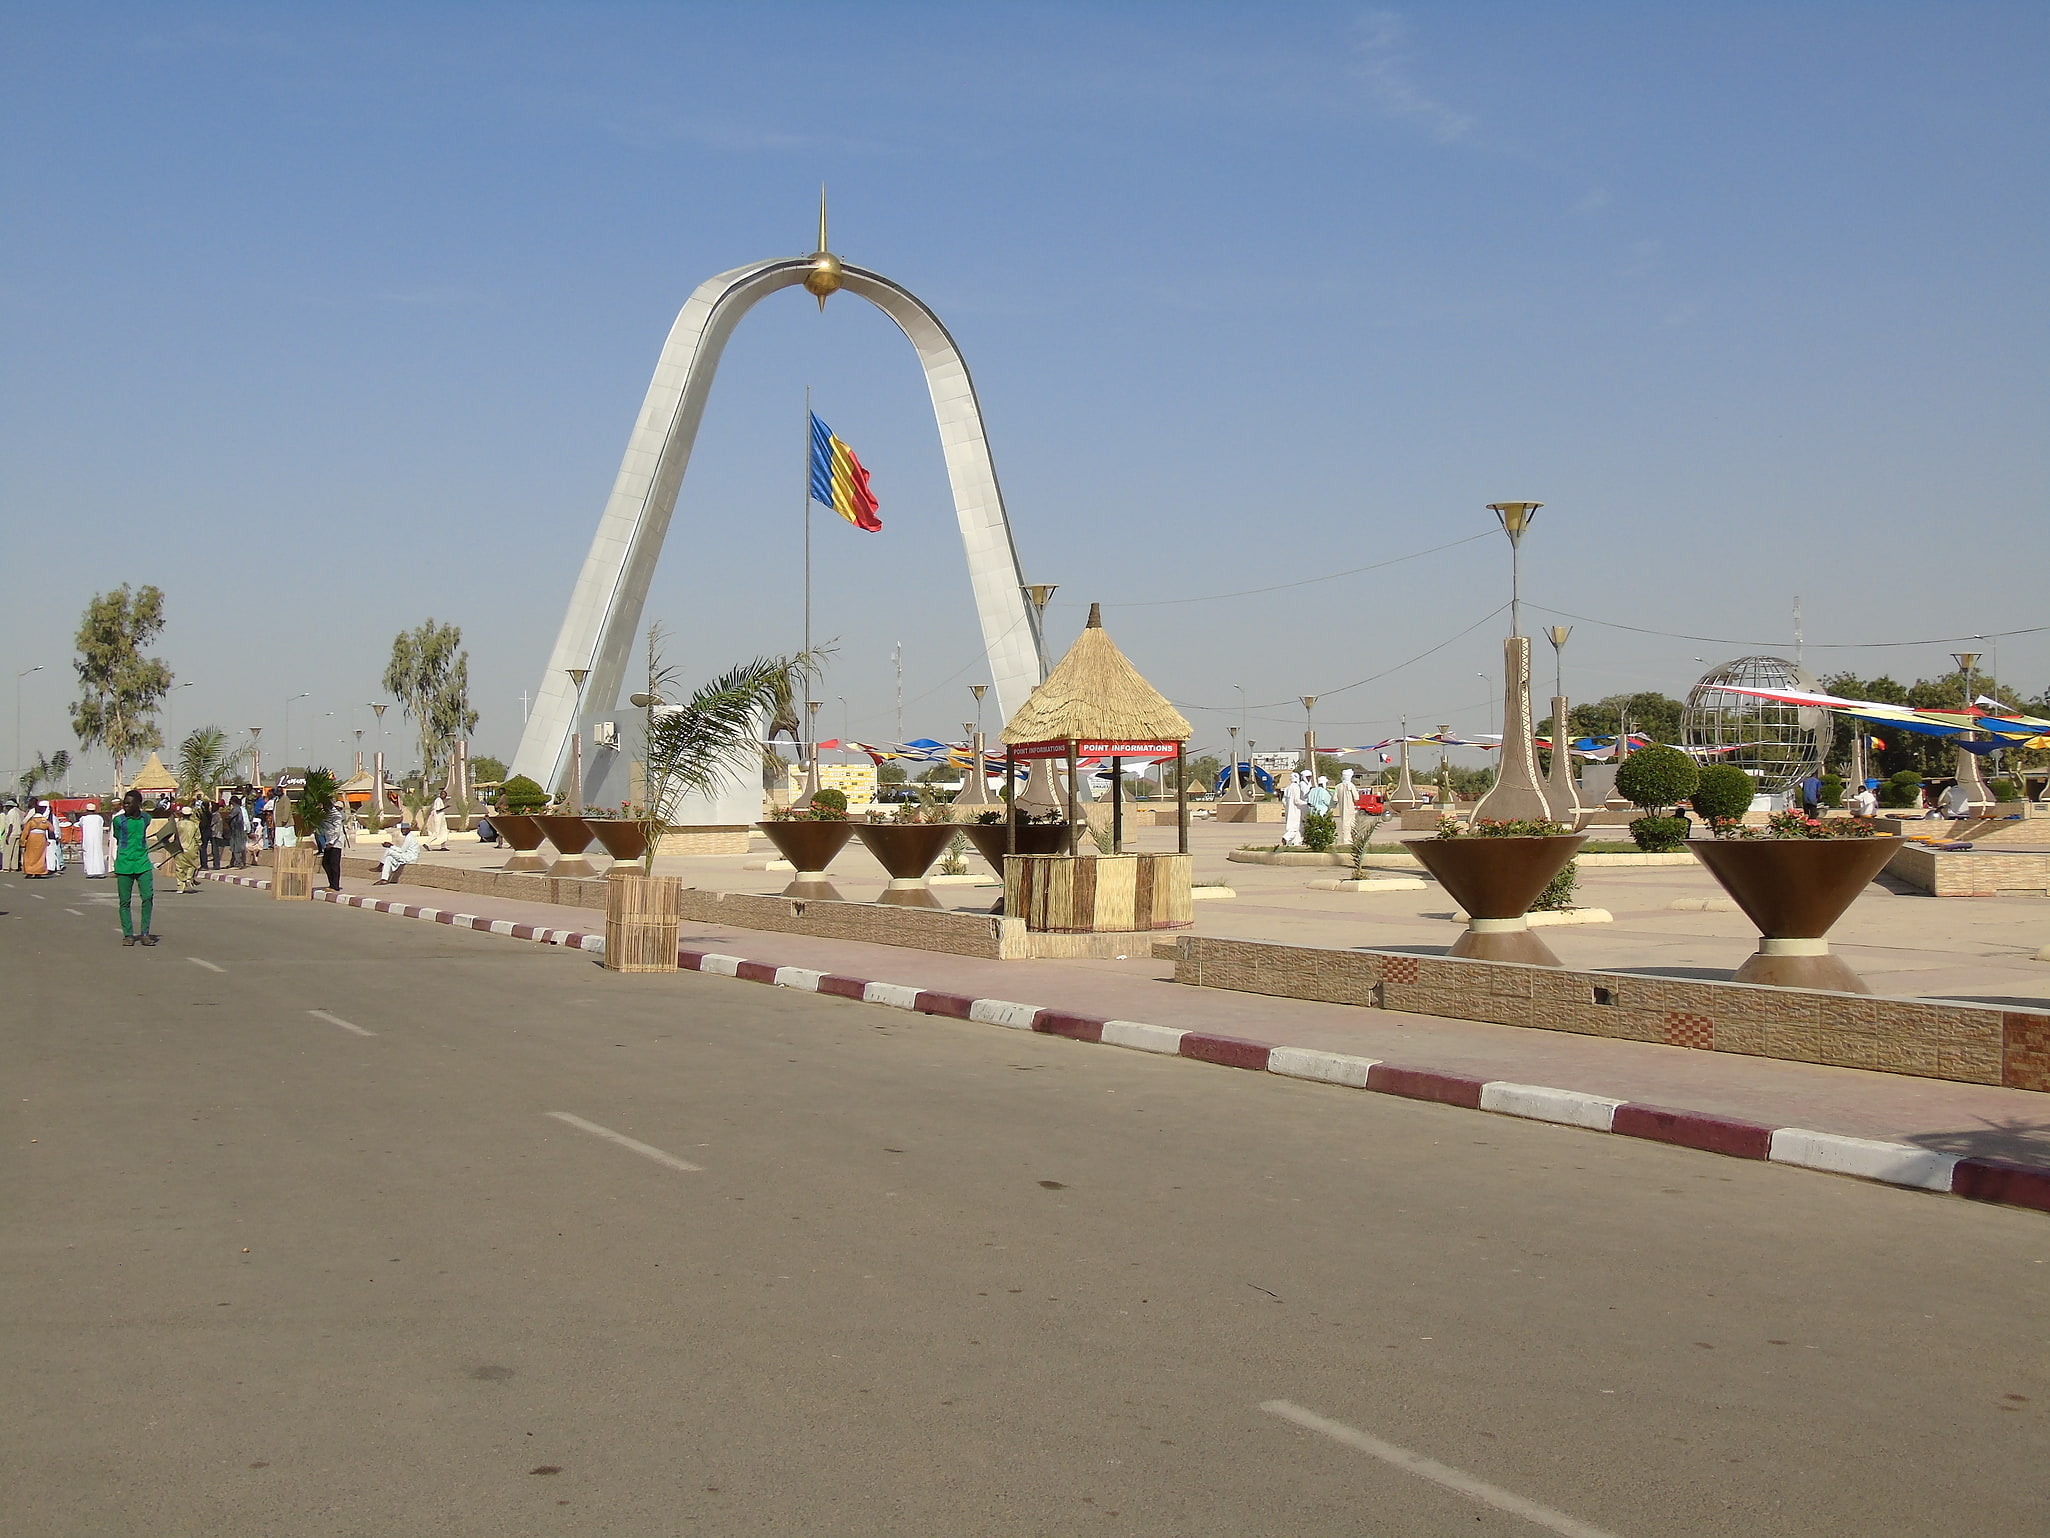 N'Djamena, Chad